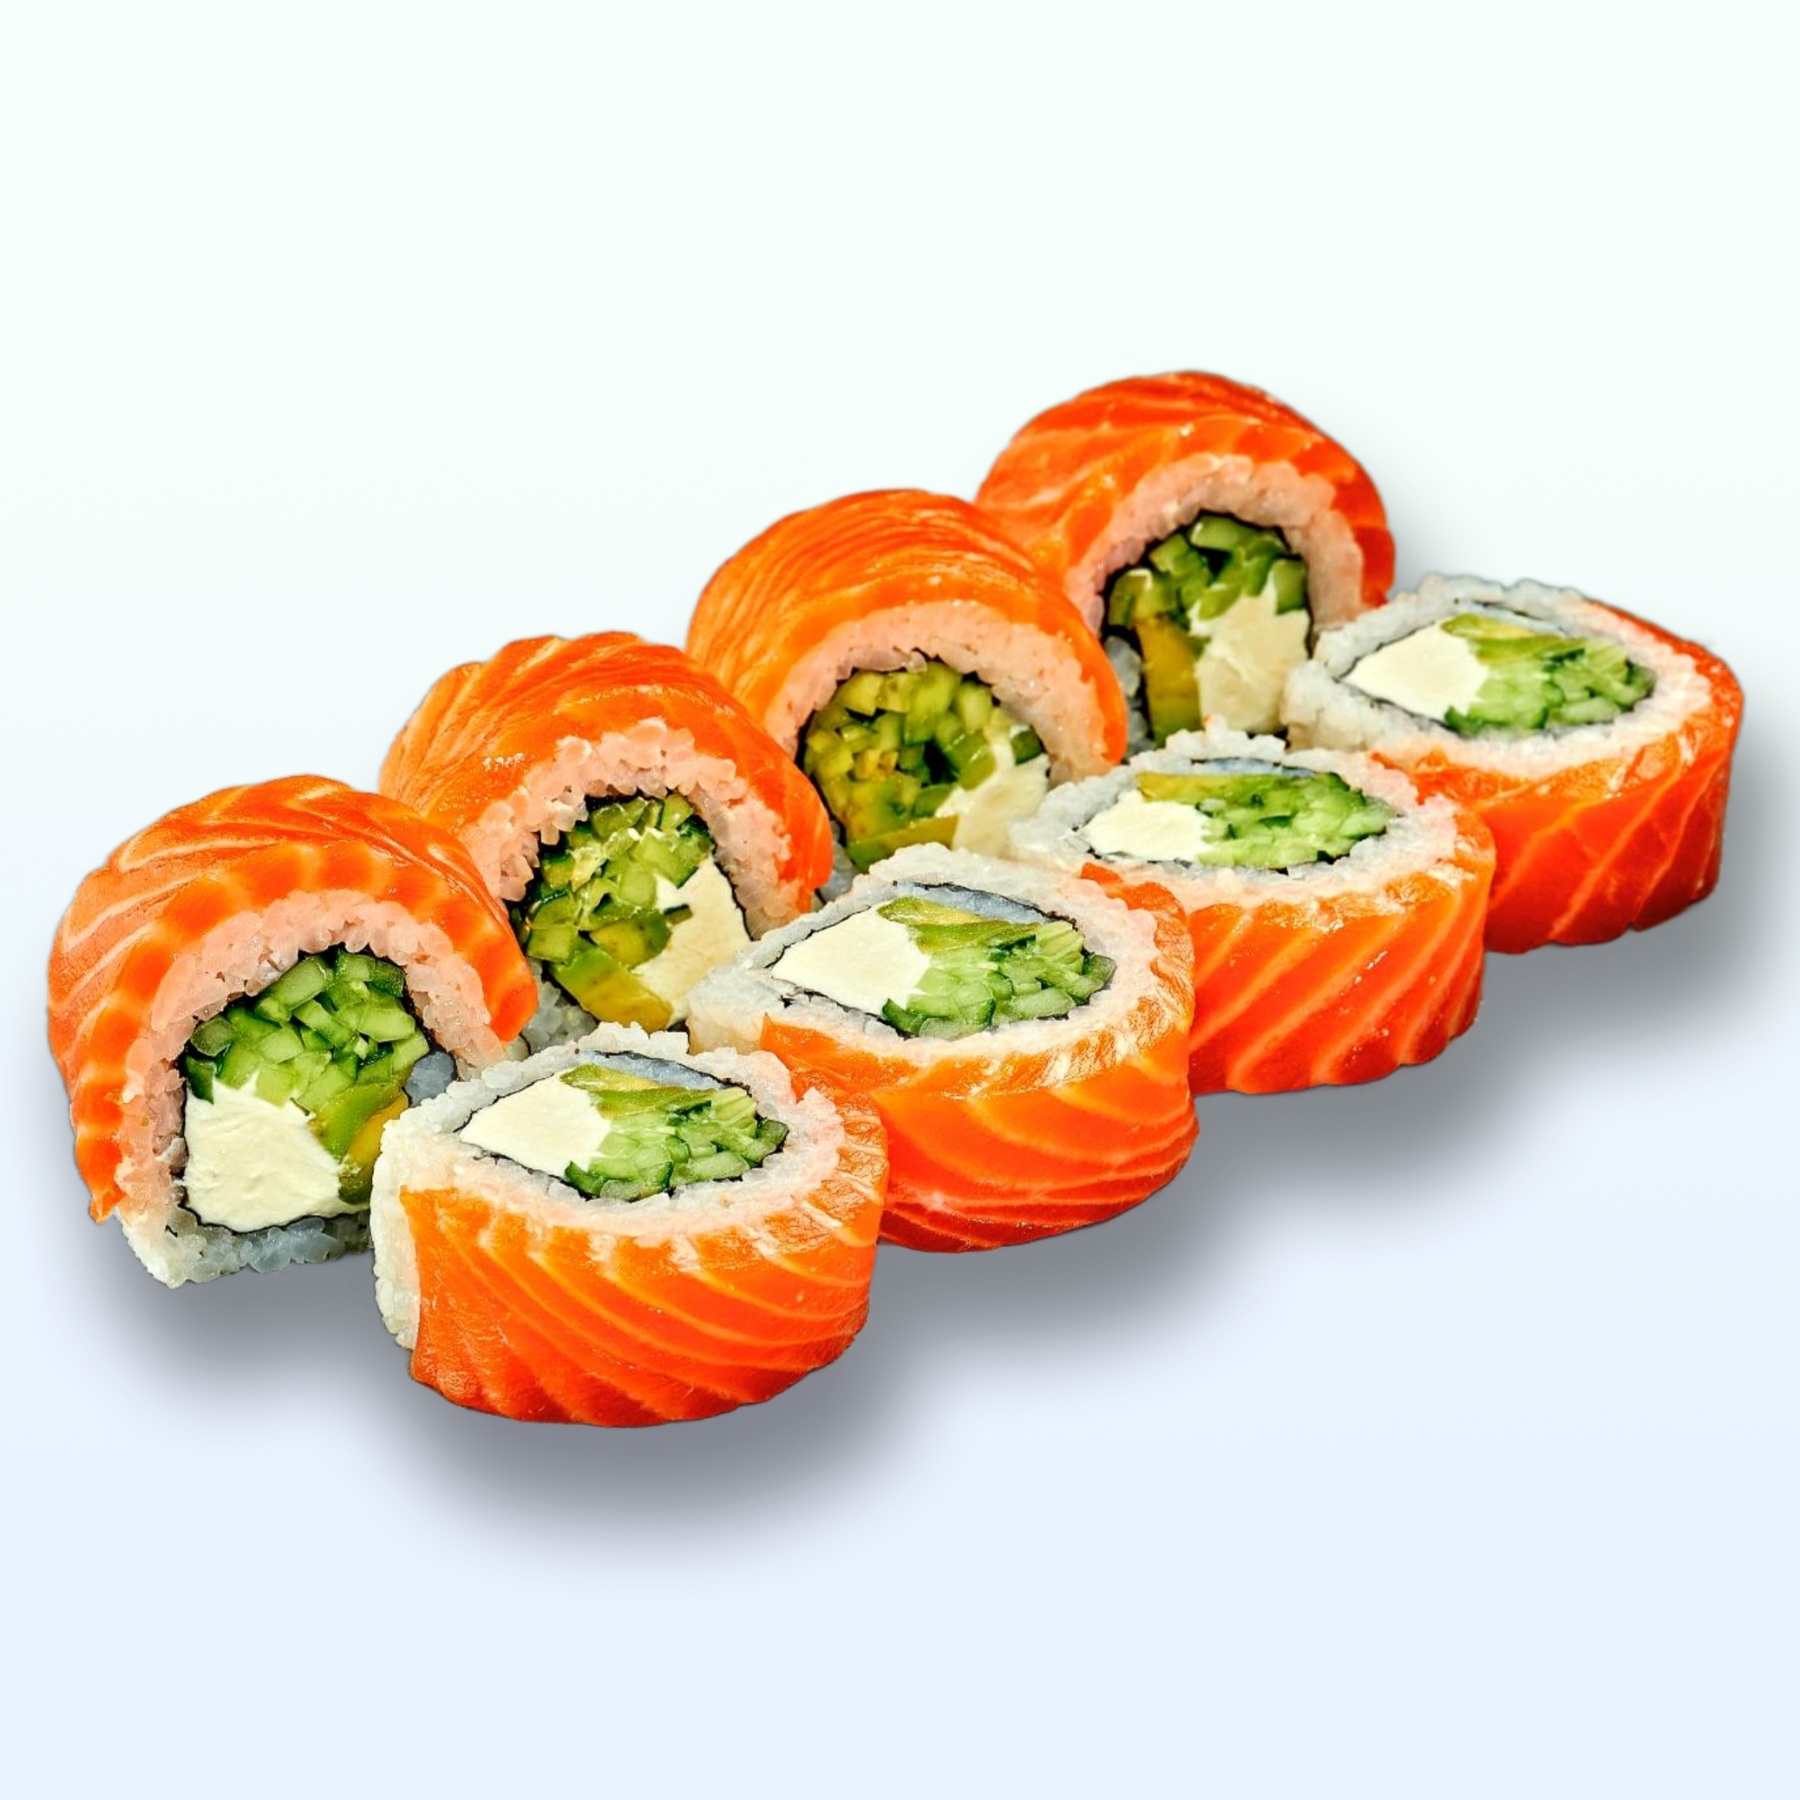 Sushi Philadelphia with smoked salmon